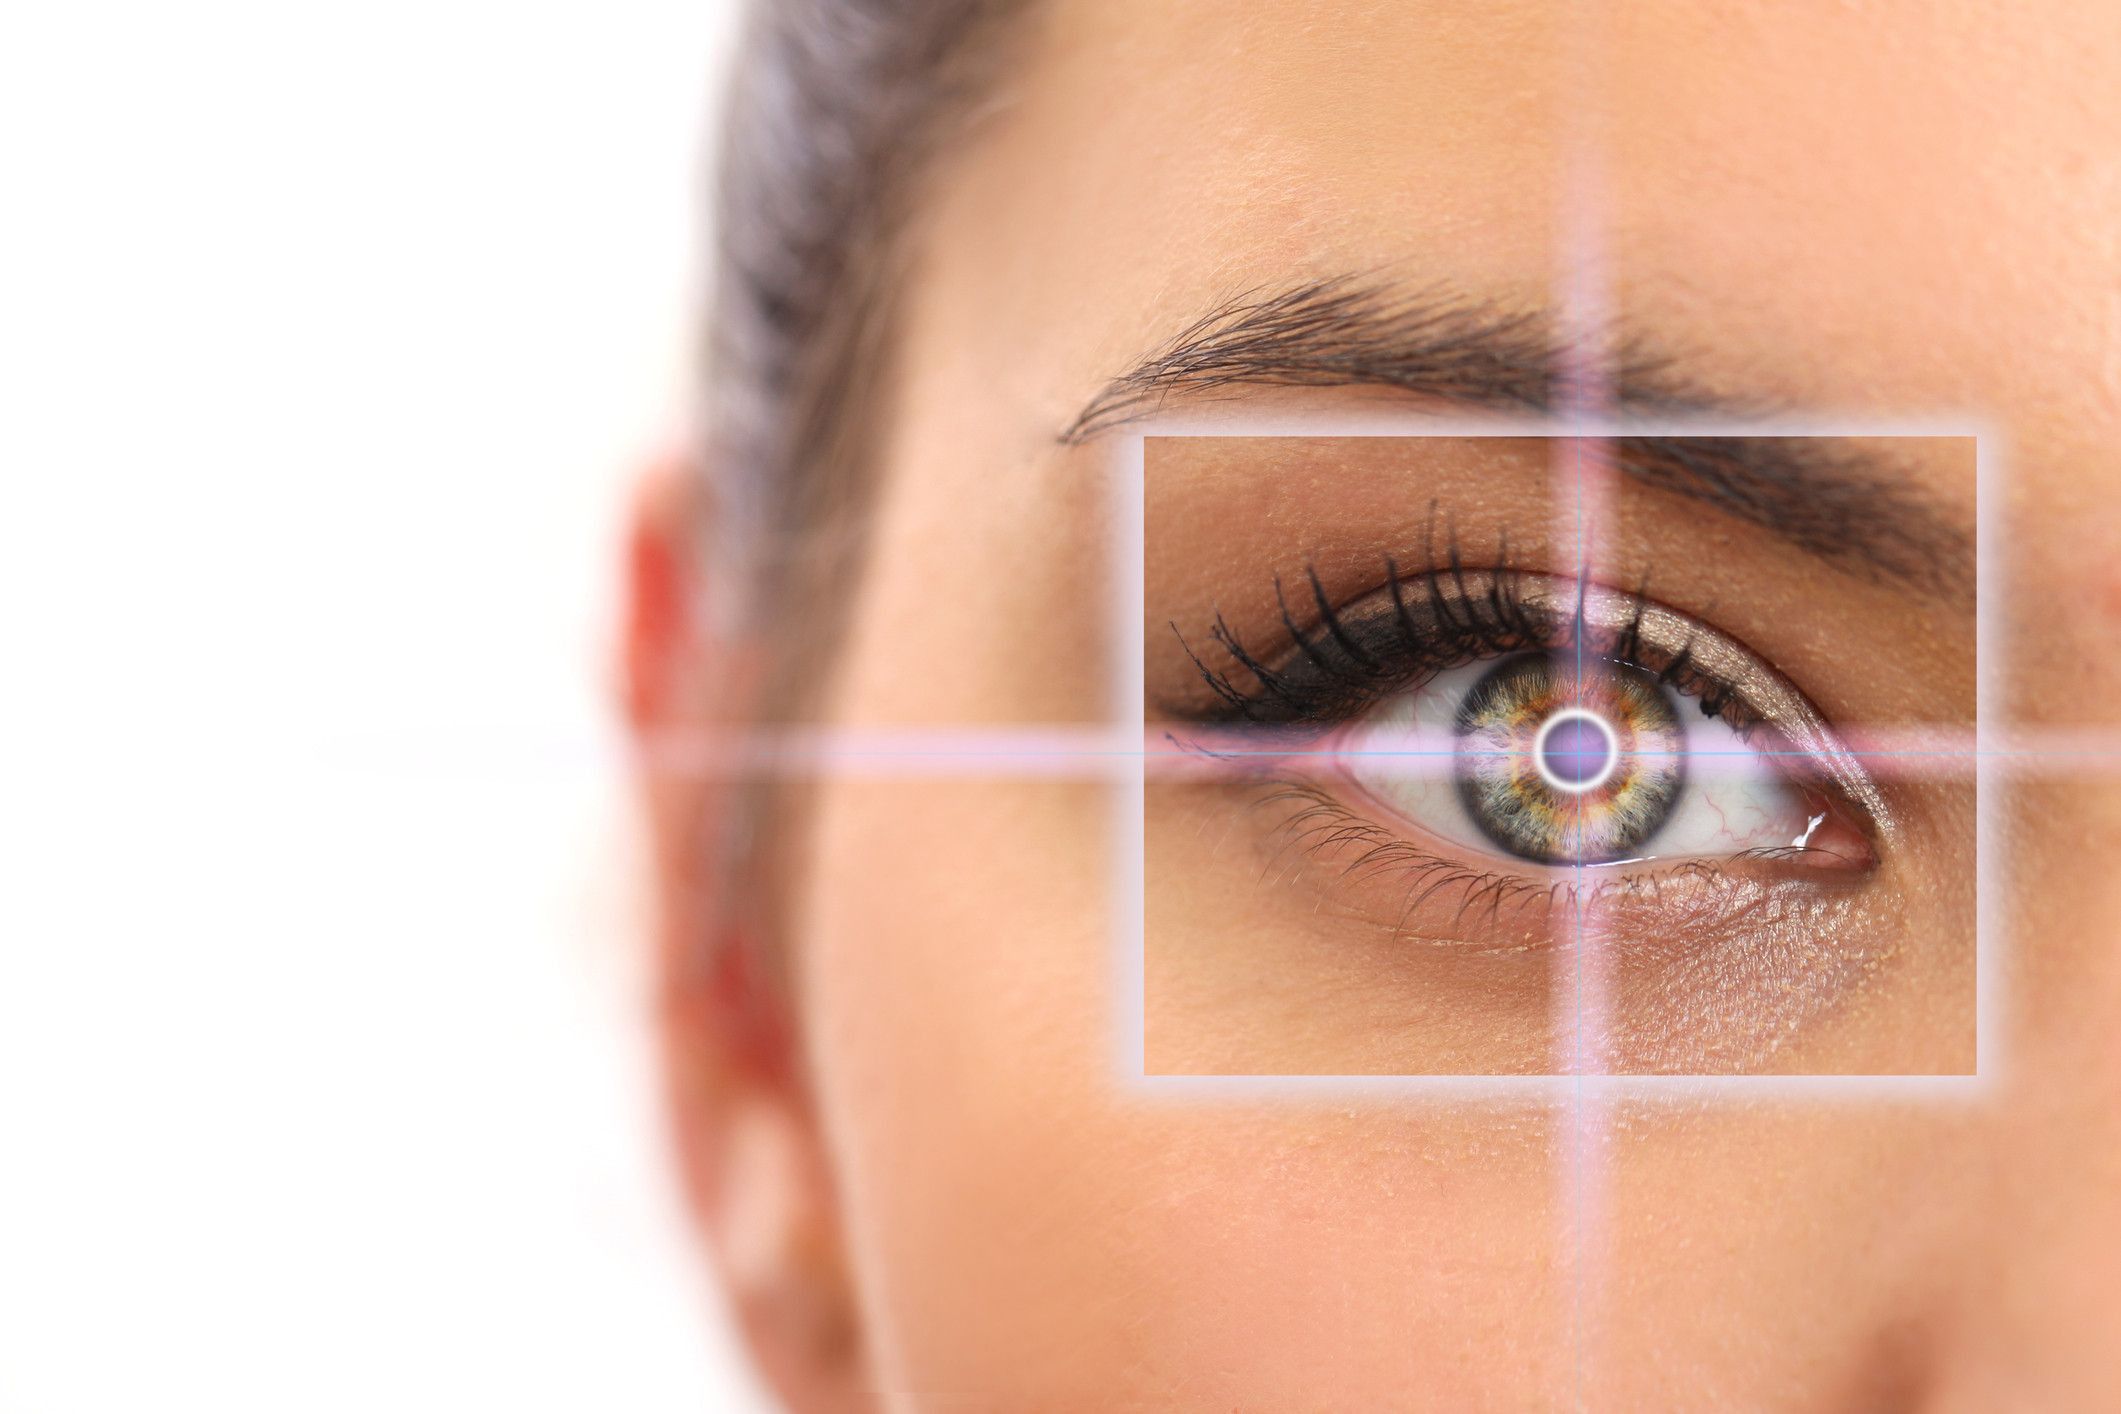 پوشش هزینه عمل لیزیک چشم در بیمه درمان تکمیلی